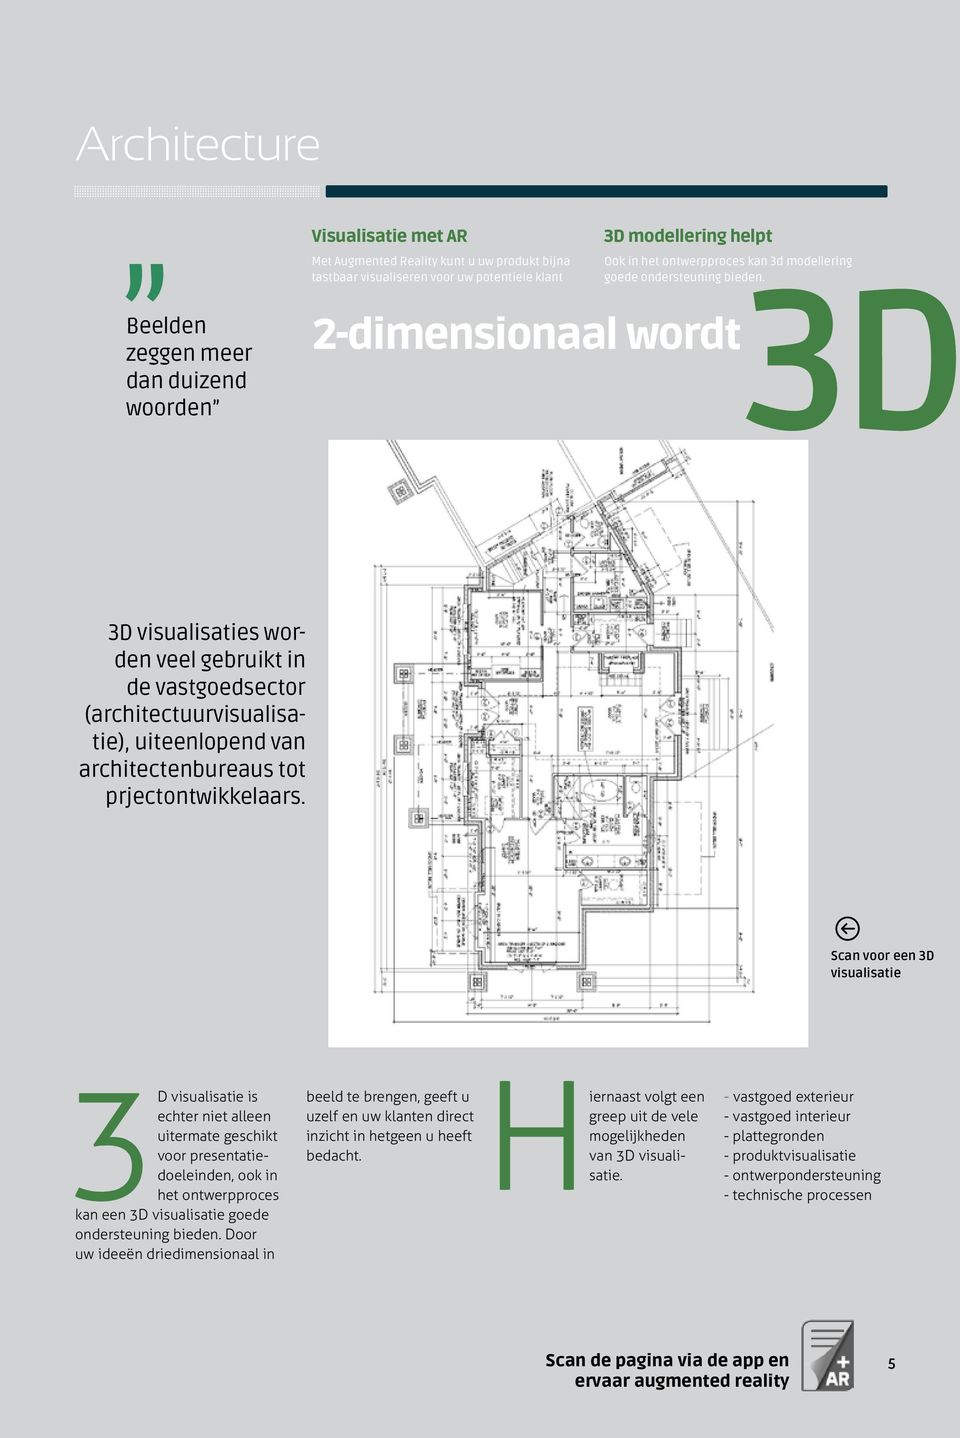 3D 3D visualisaties worden veel gebruikt in de vastgoedsector (architectuurvisualisatie), uiteenlopend van architectenbureaus tot prjectontwikkelaars.